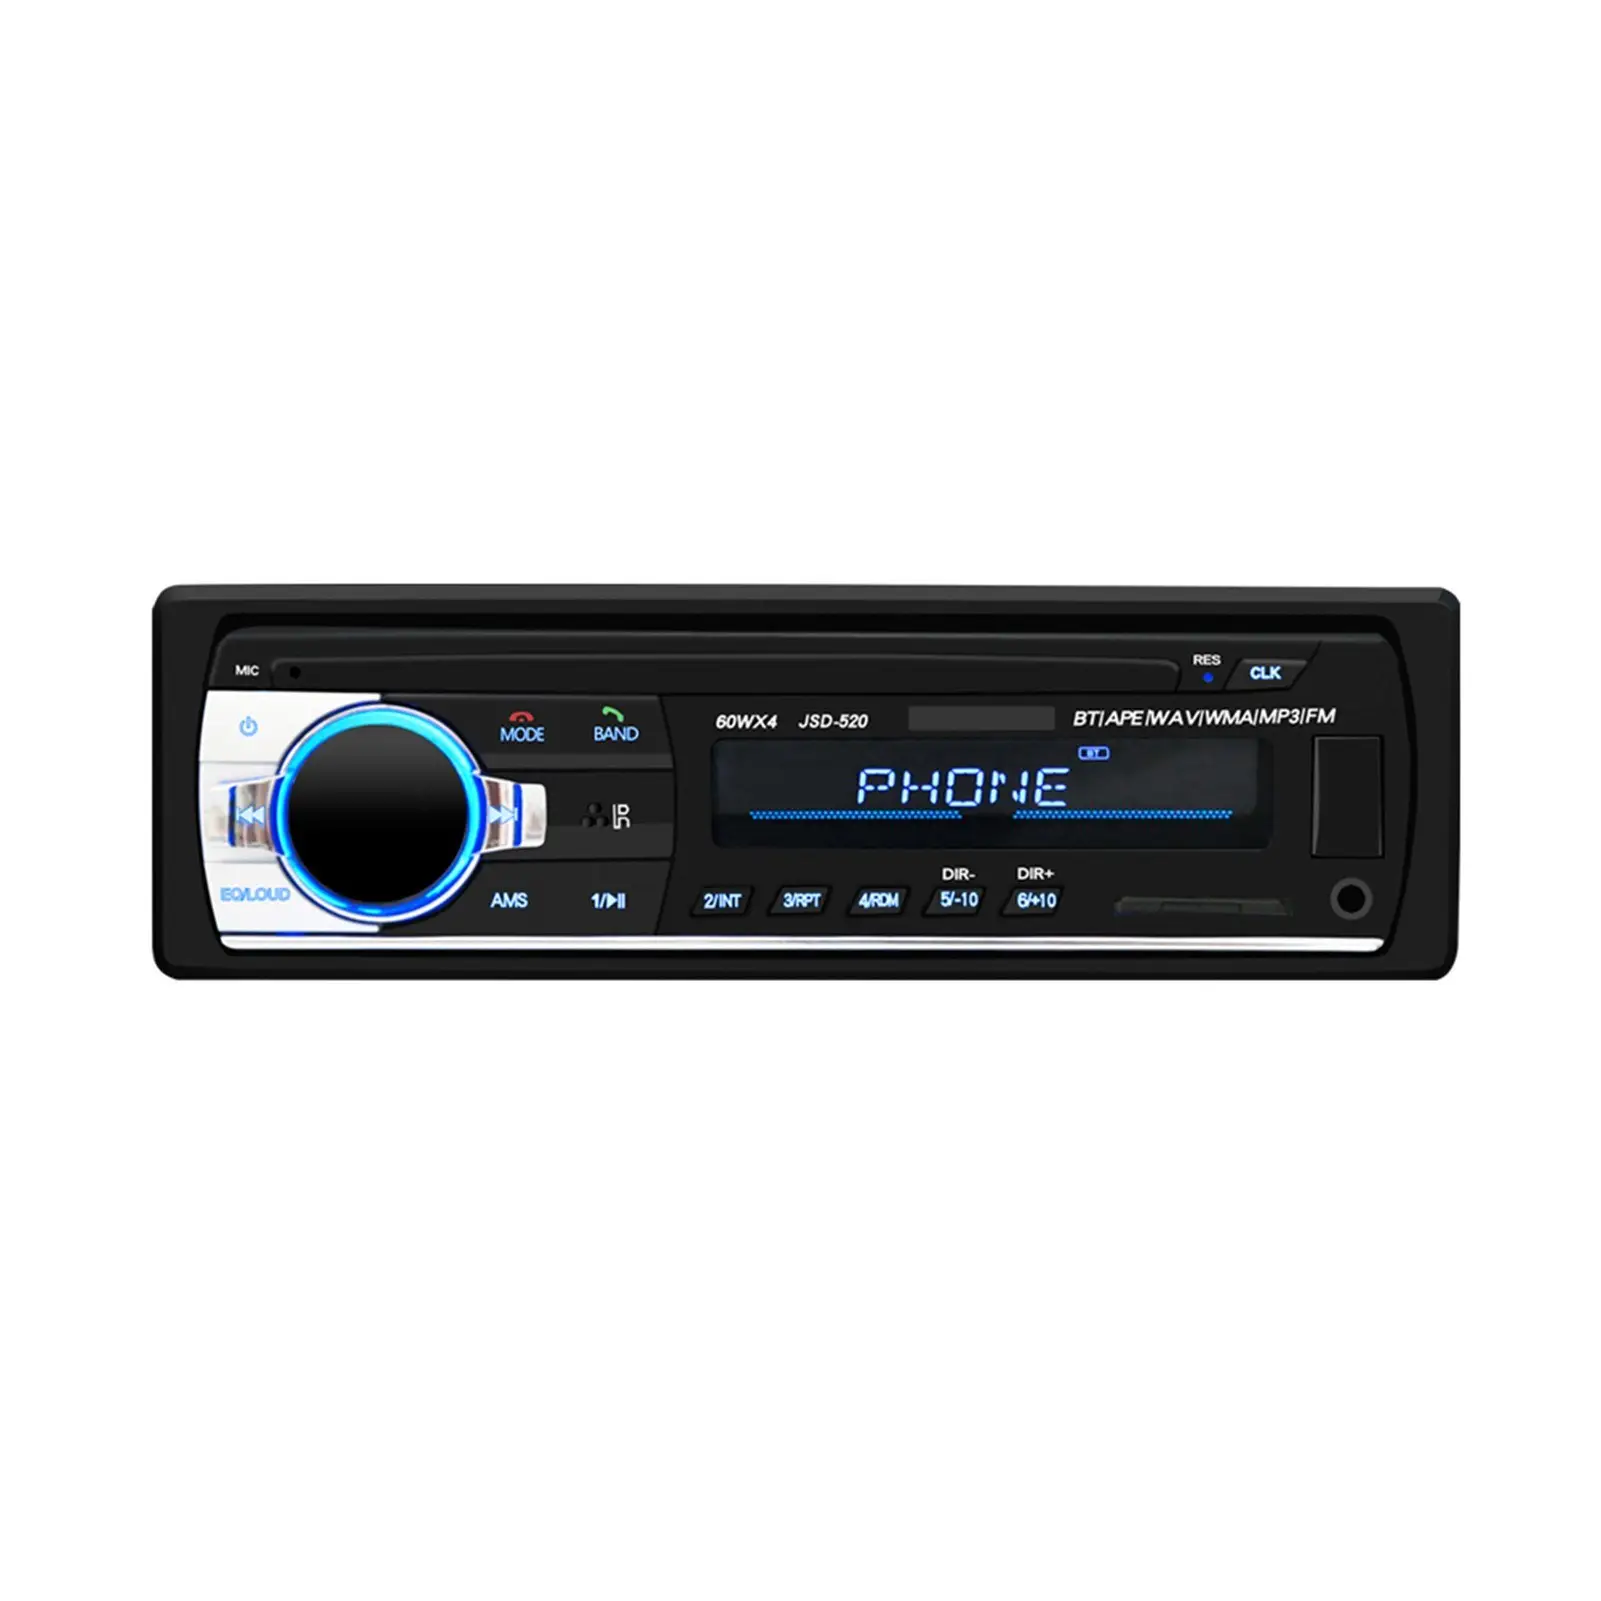 דיגיטלי HD LCD תצוגת רכב MP3 נגן BT 2.0V סטריאו לרכב עם USB/SD/MMC/MP3/WMA/FM רדיו מקלט